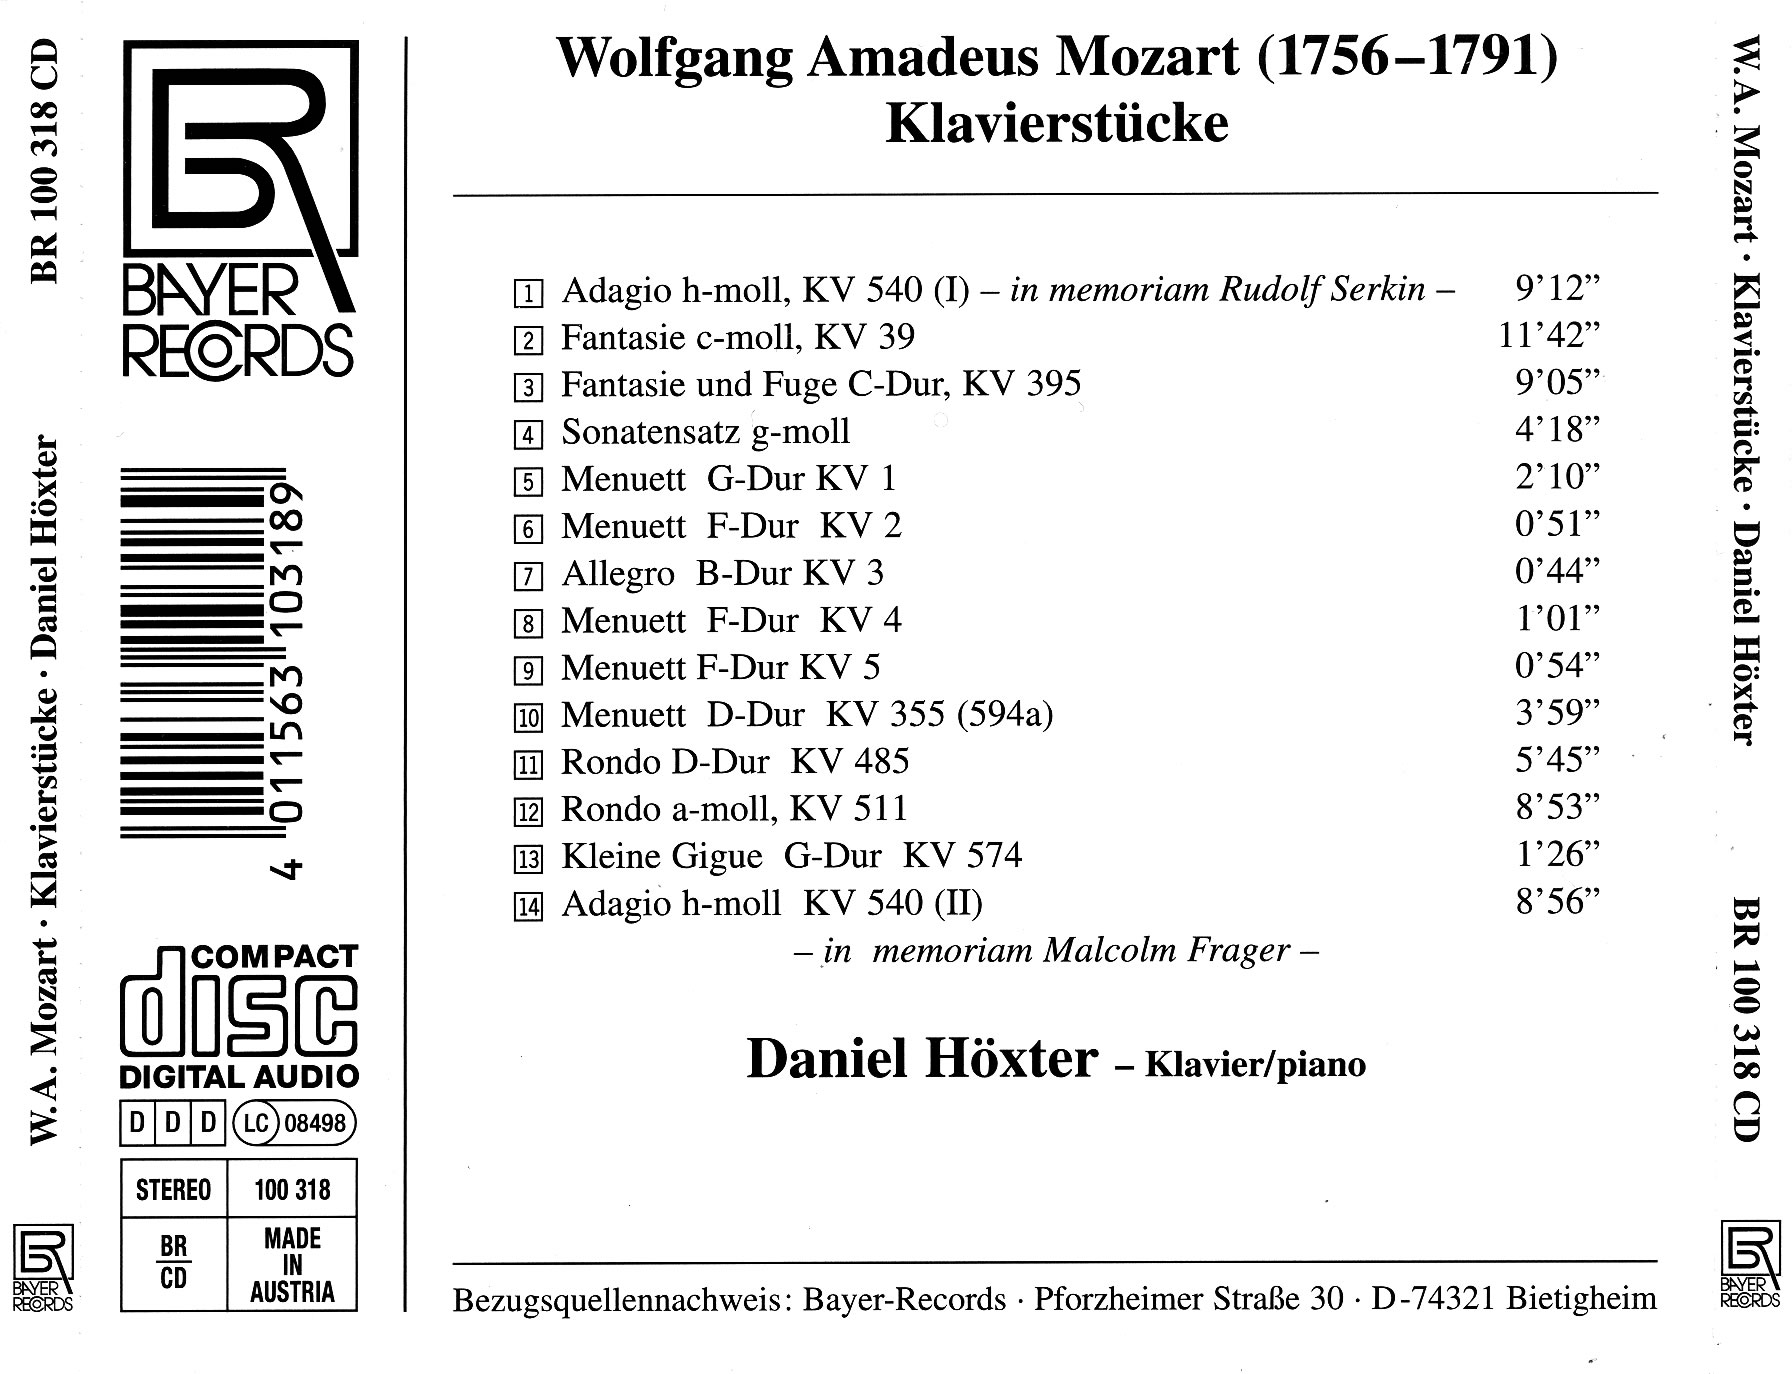 Daniel Höxter spielt/plays Mozart